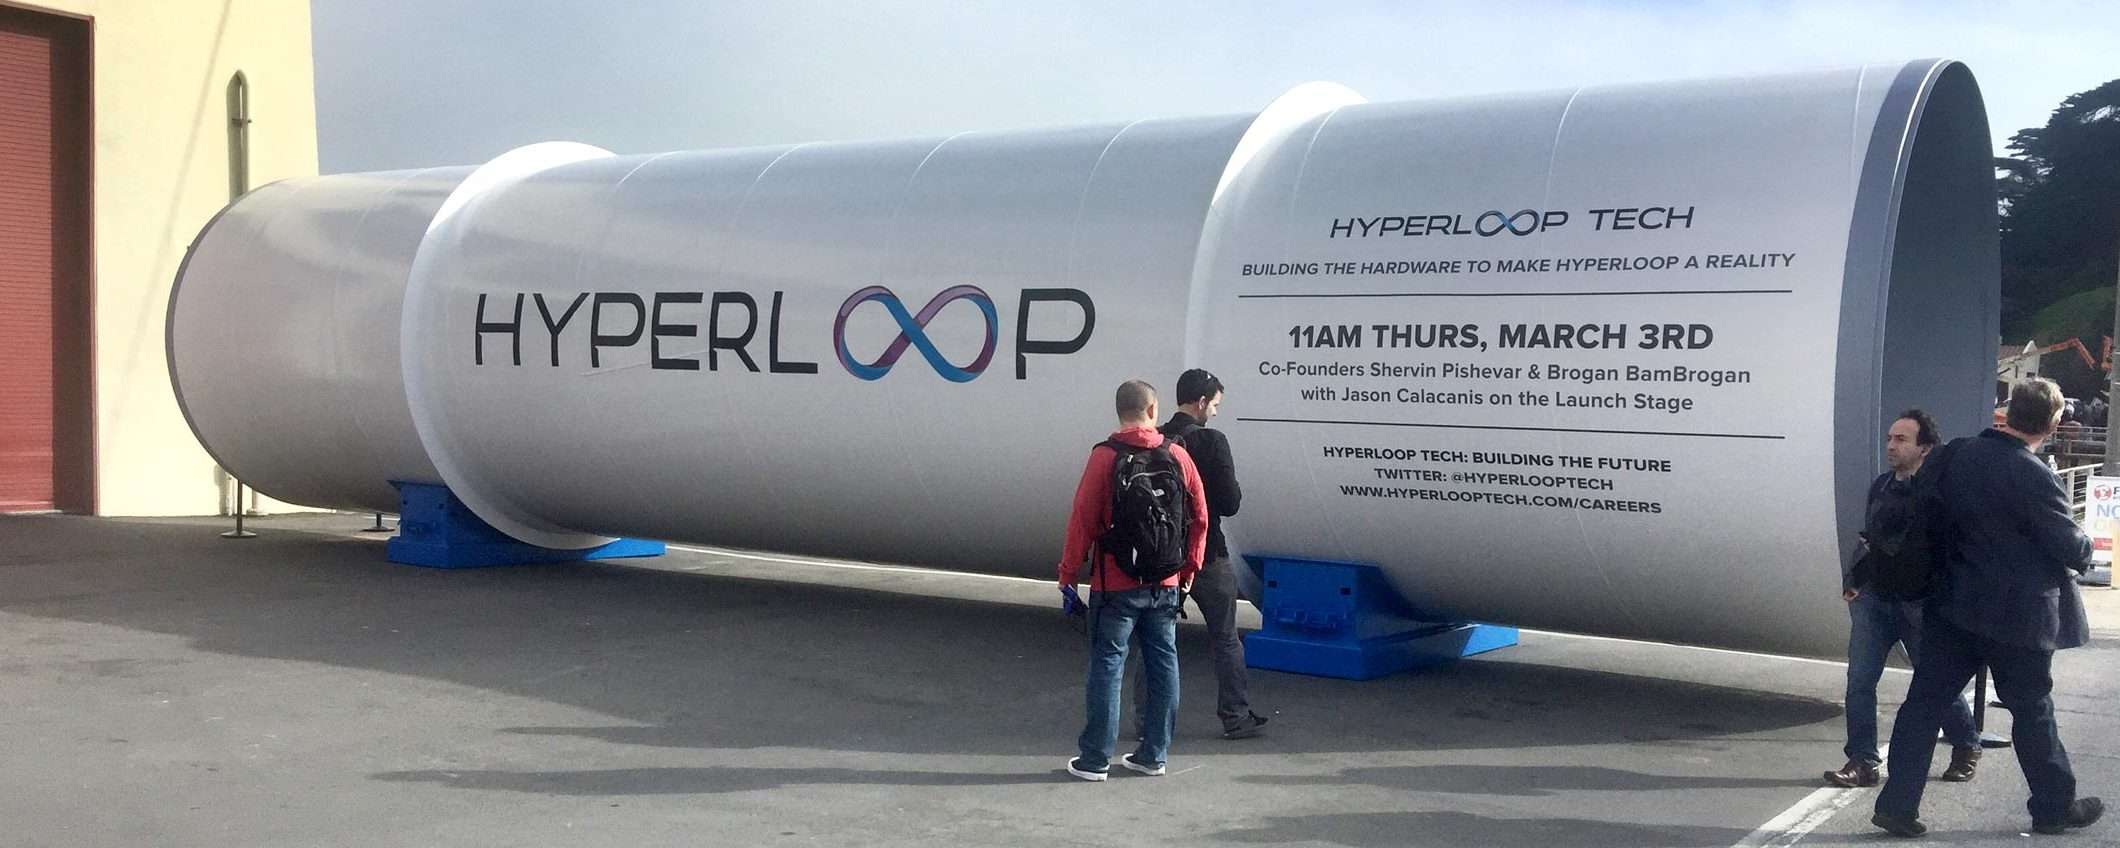 Hyperloop One chiude: la rivoluzione mancata